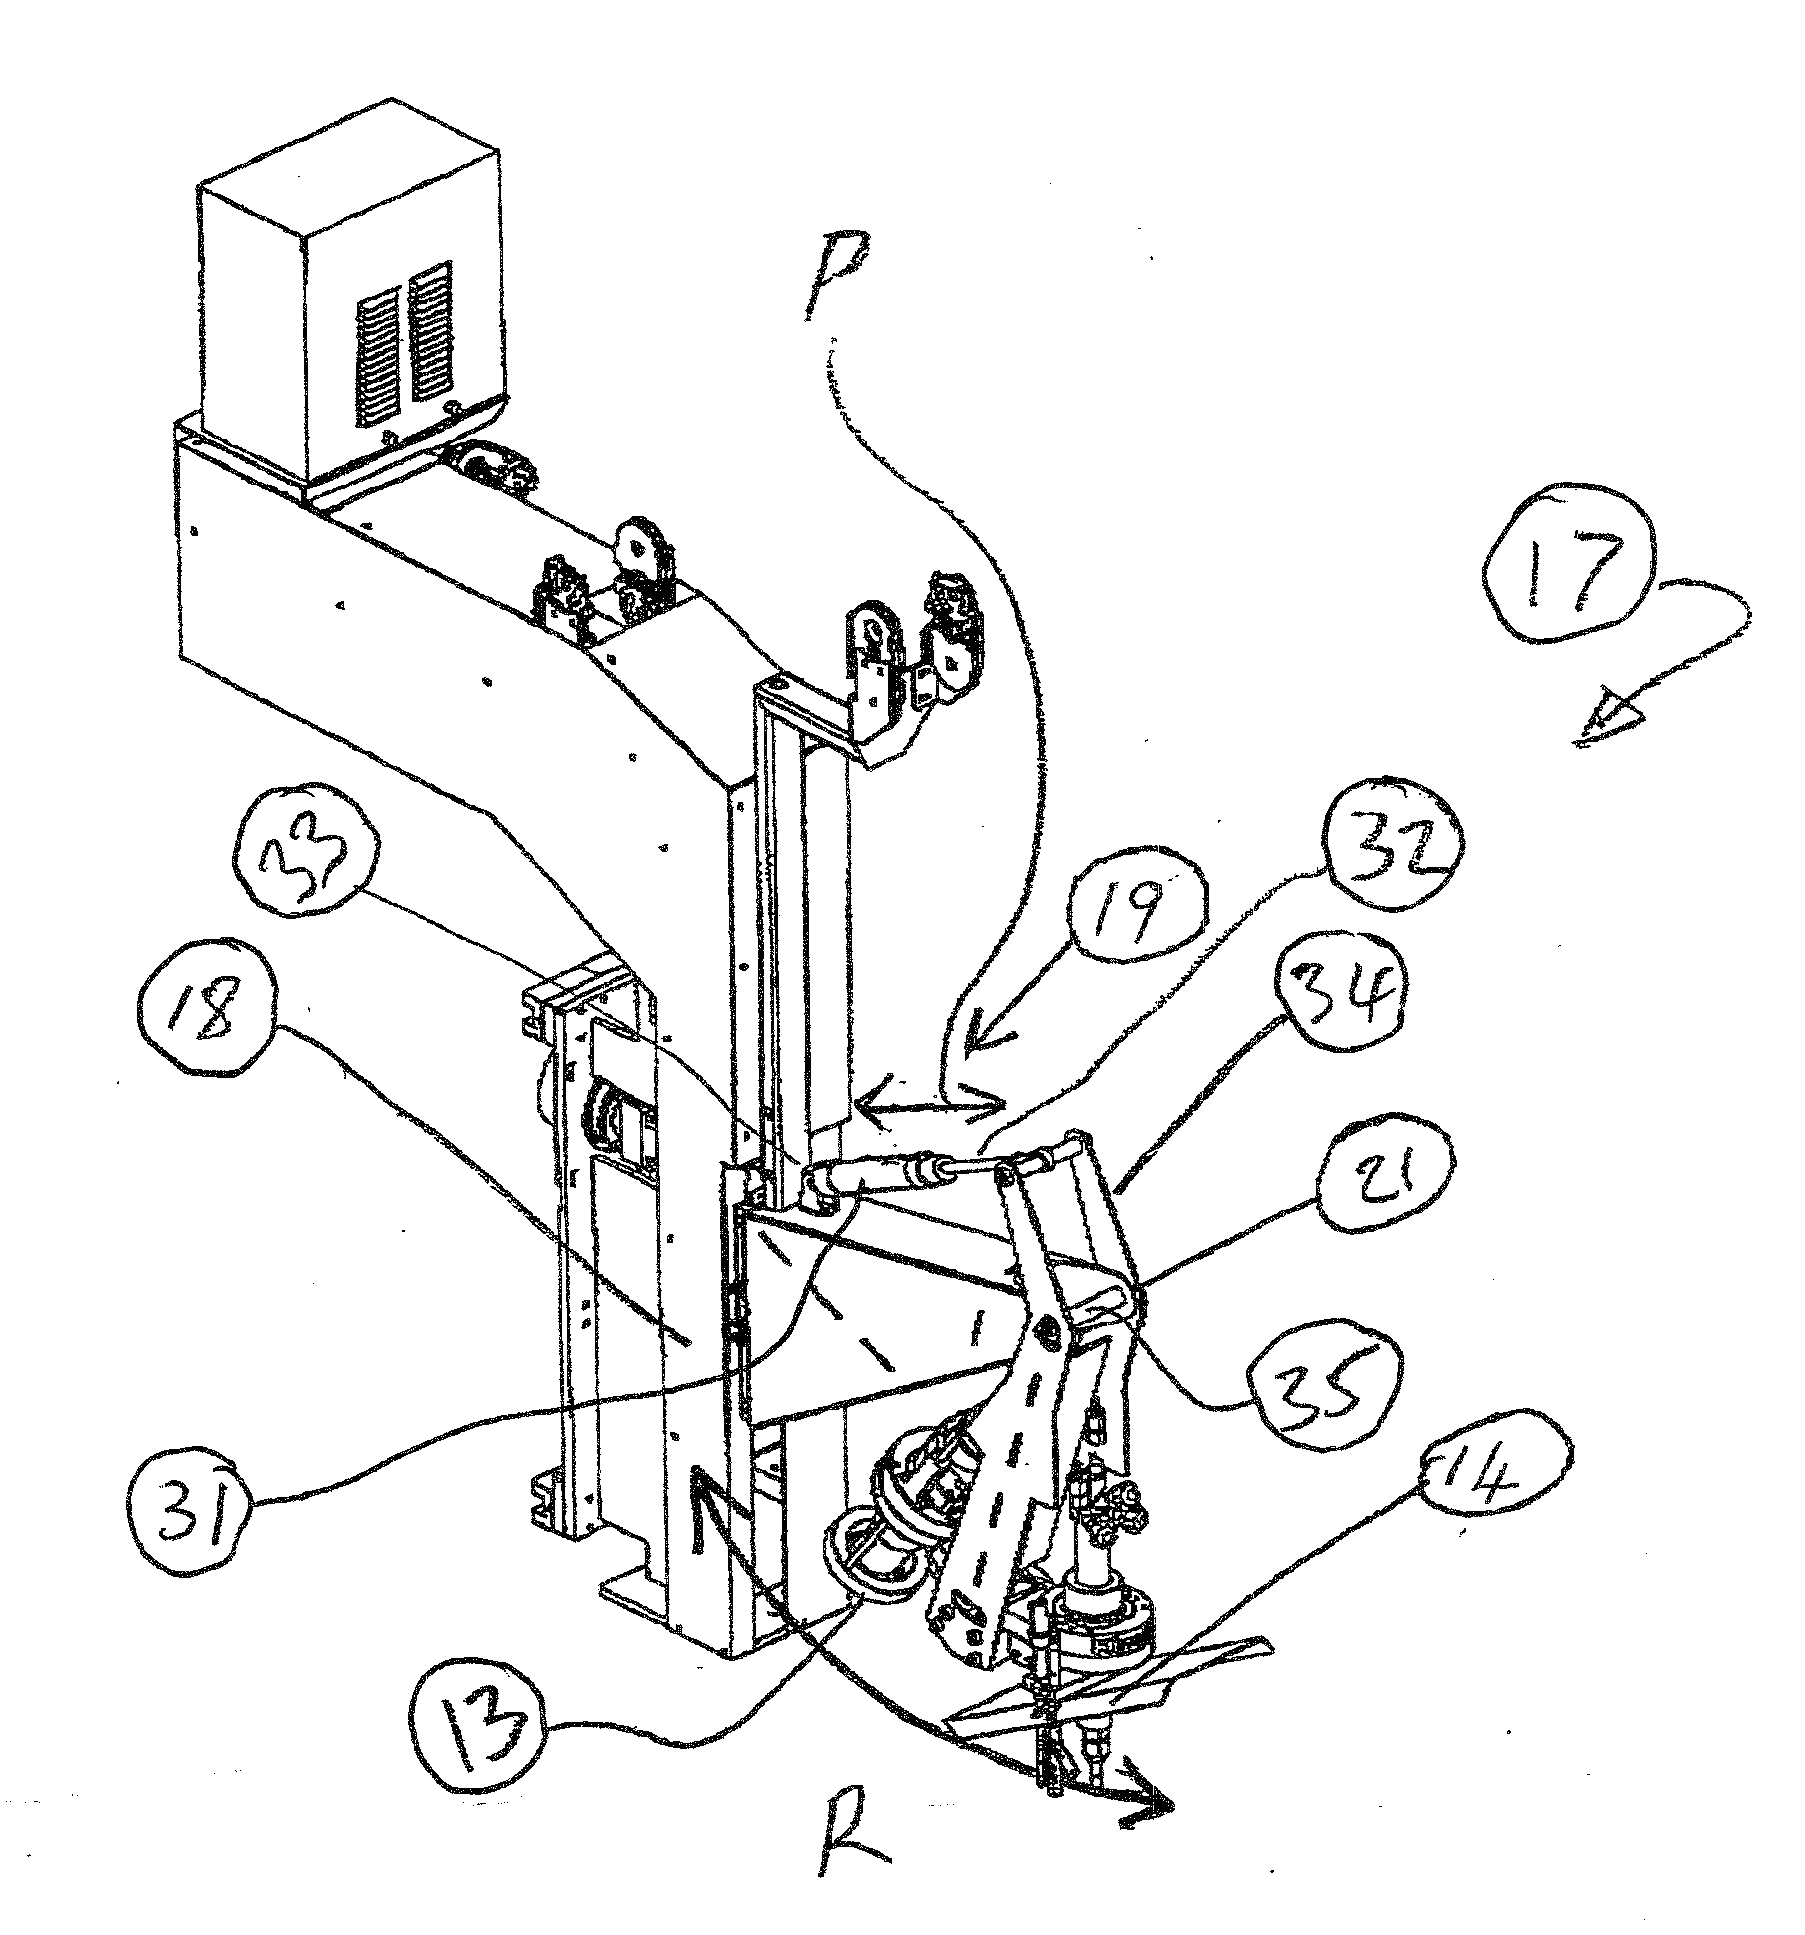 Torch spacing apparatus